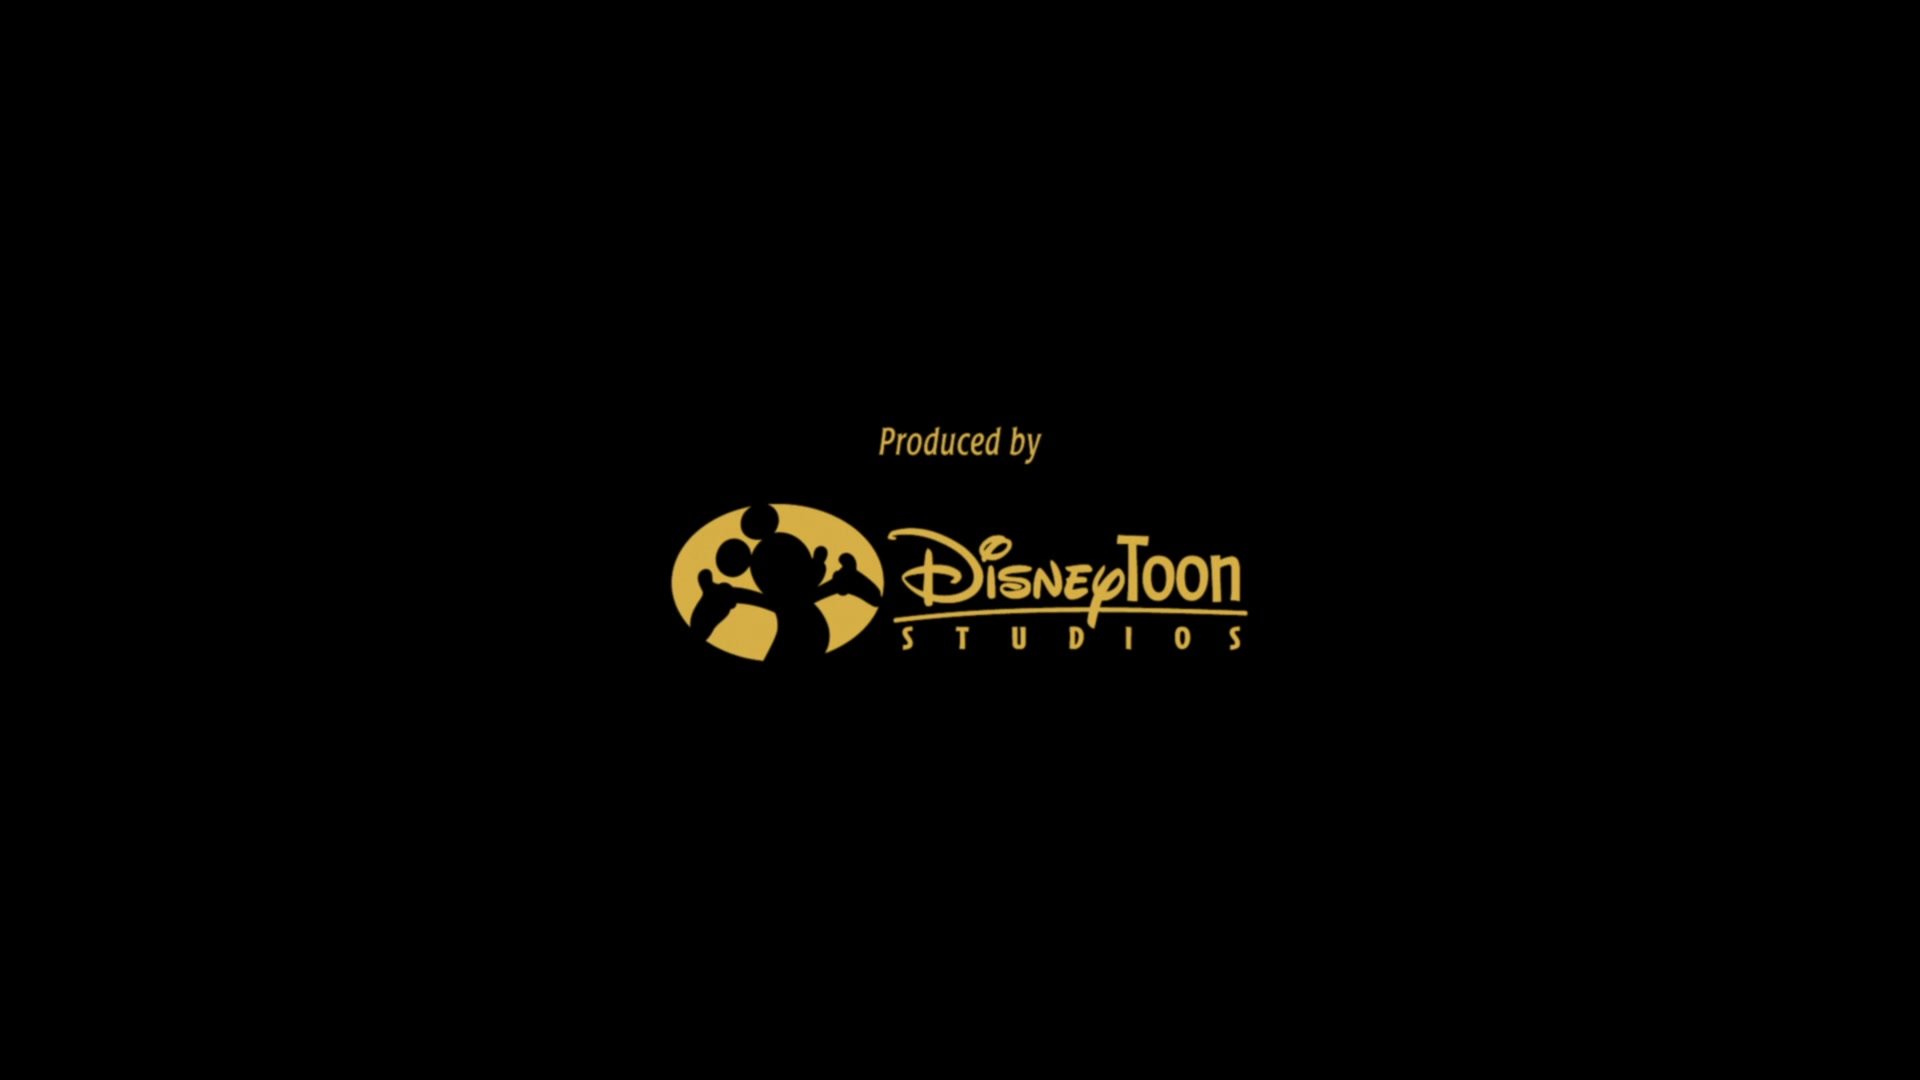 DisneyToon Studios Summary